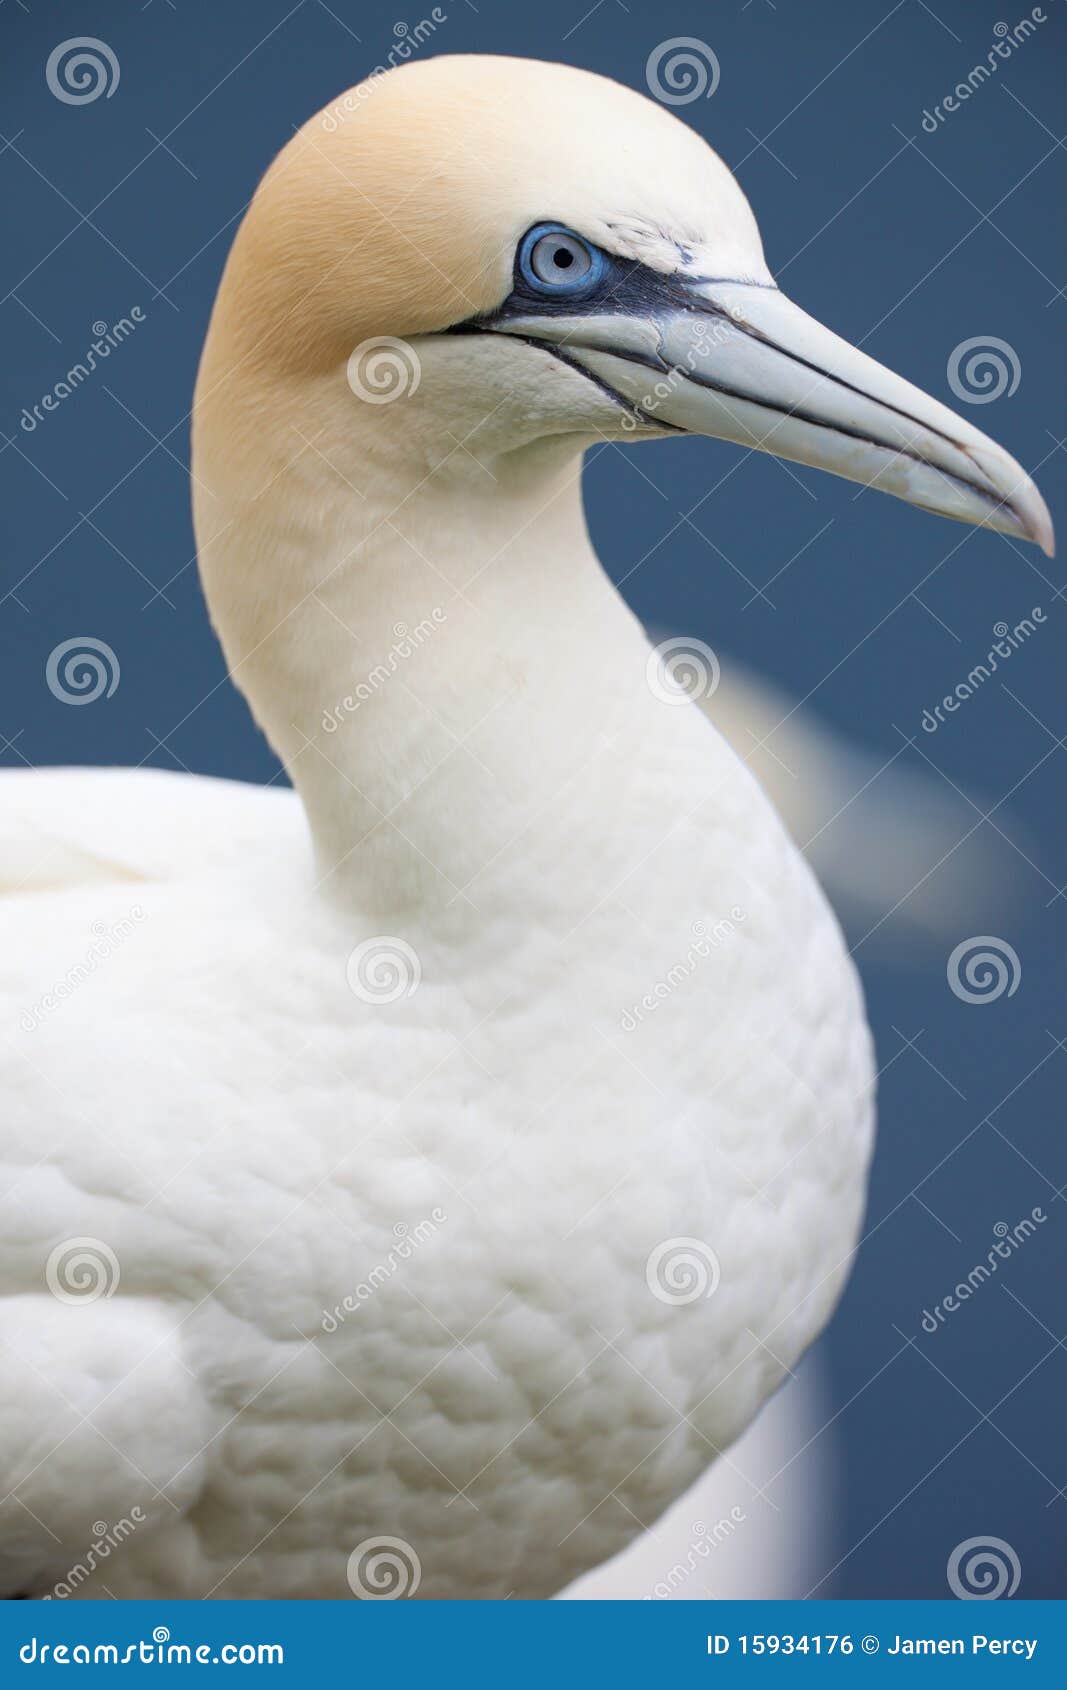 gannet close up